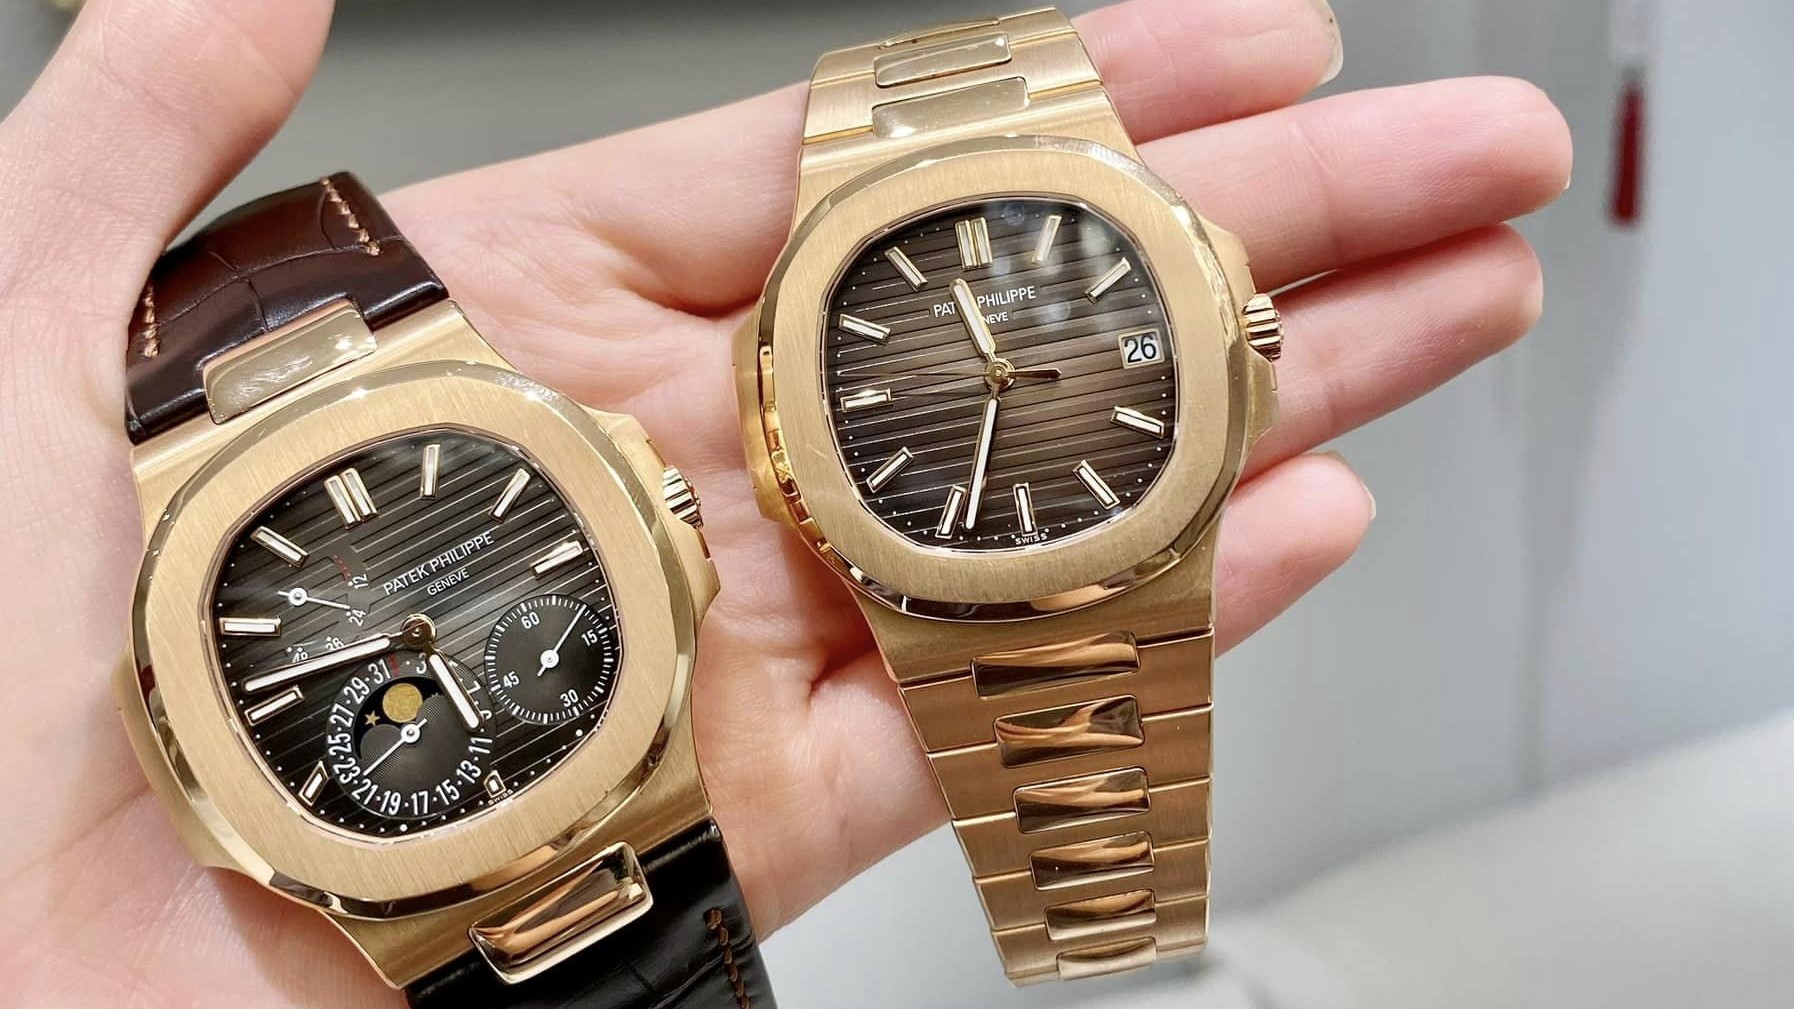  Khám phá những chiếc đồng hồ cơ Patek Philippe bán chạy nhất ở EU Luxury